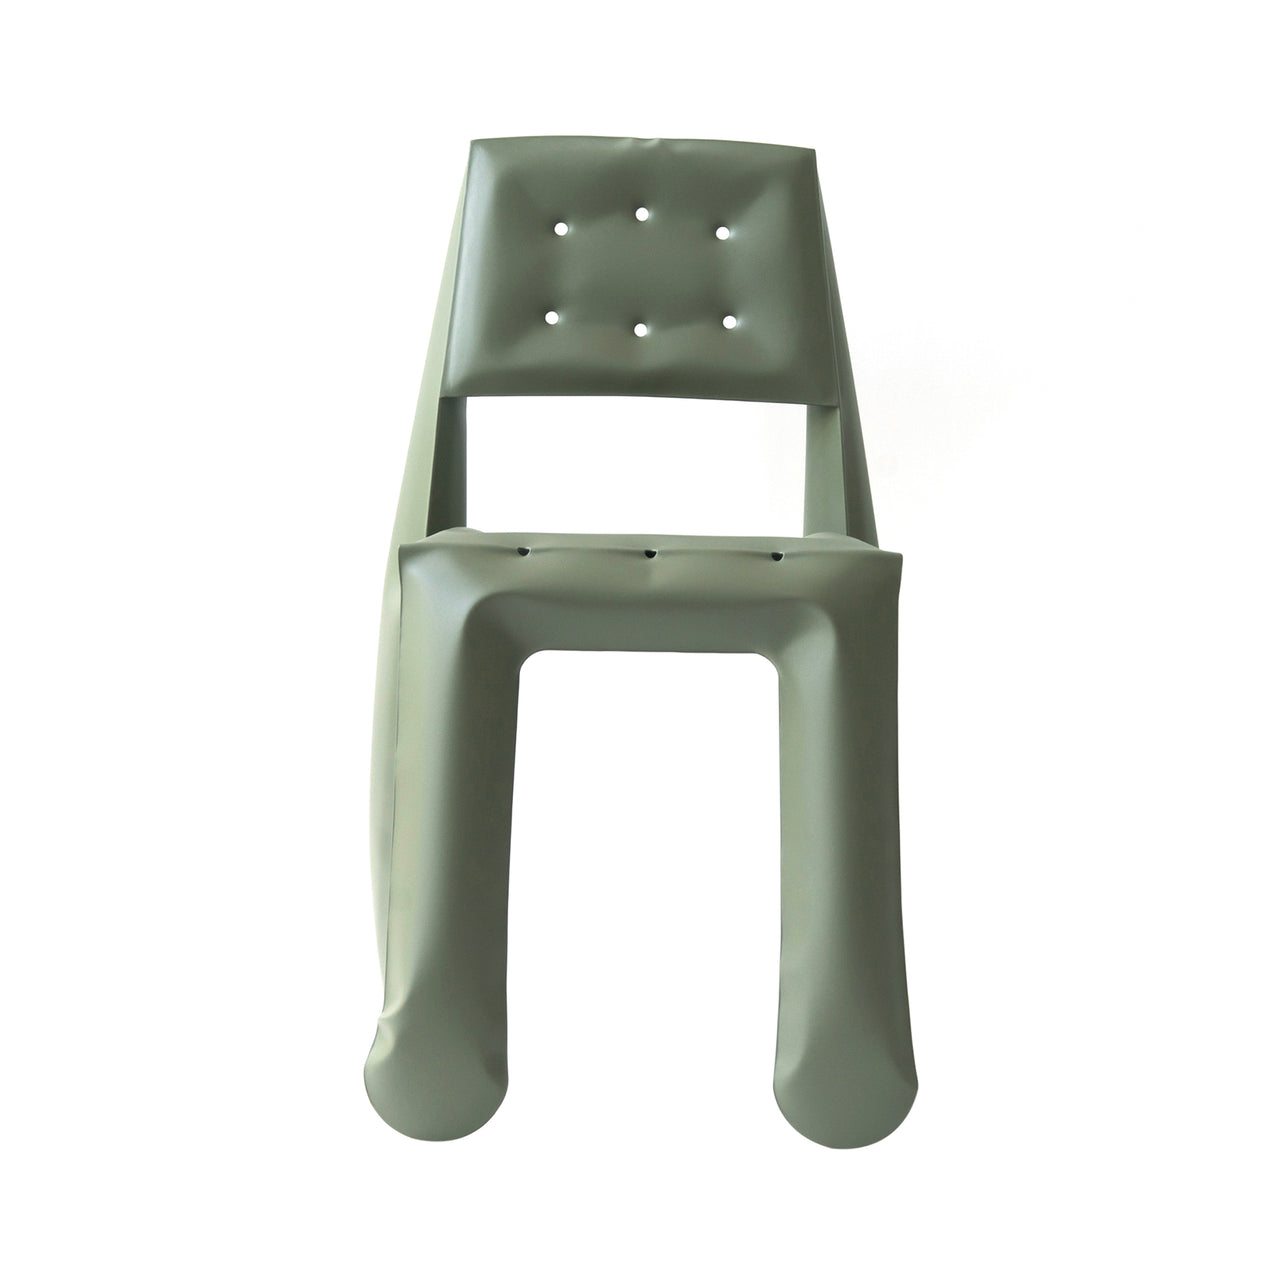 Chippensteel 0.5 Chair: Moss Grey Carbon Steel